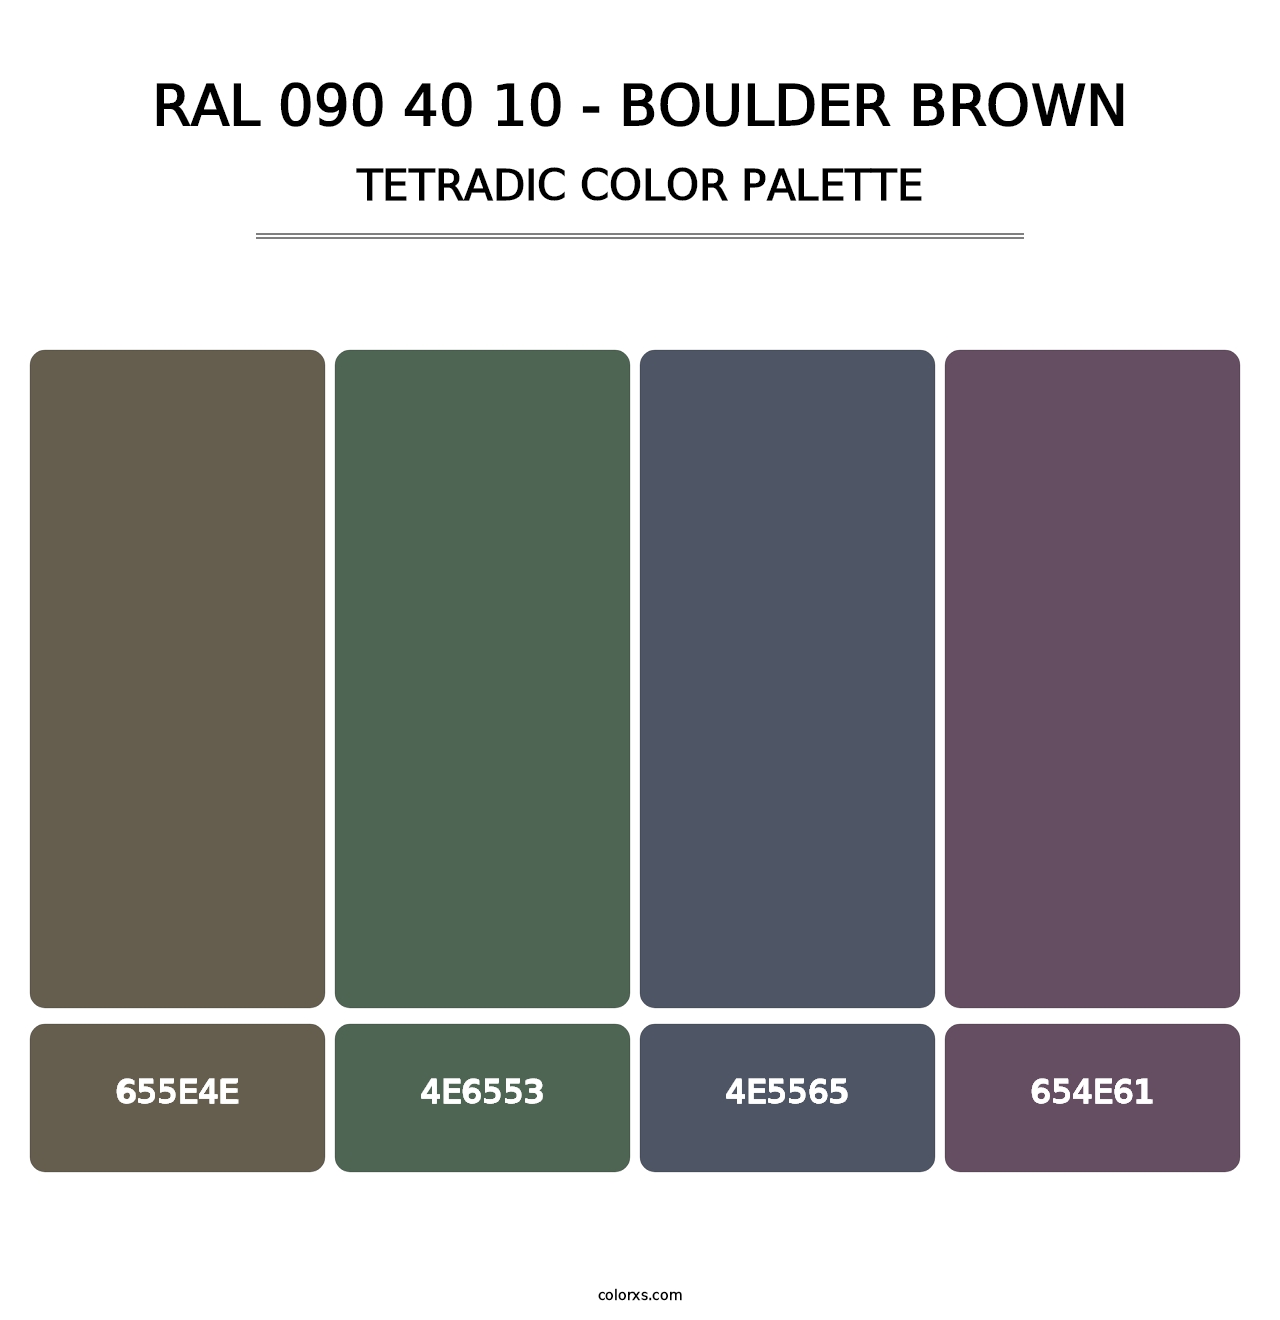 RAL 090 40 10 - Boulder Brown - Tetradic Color Palette